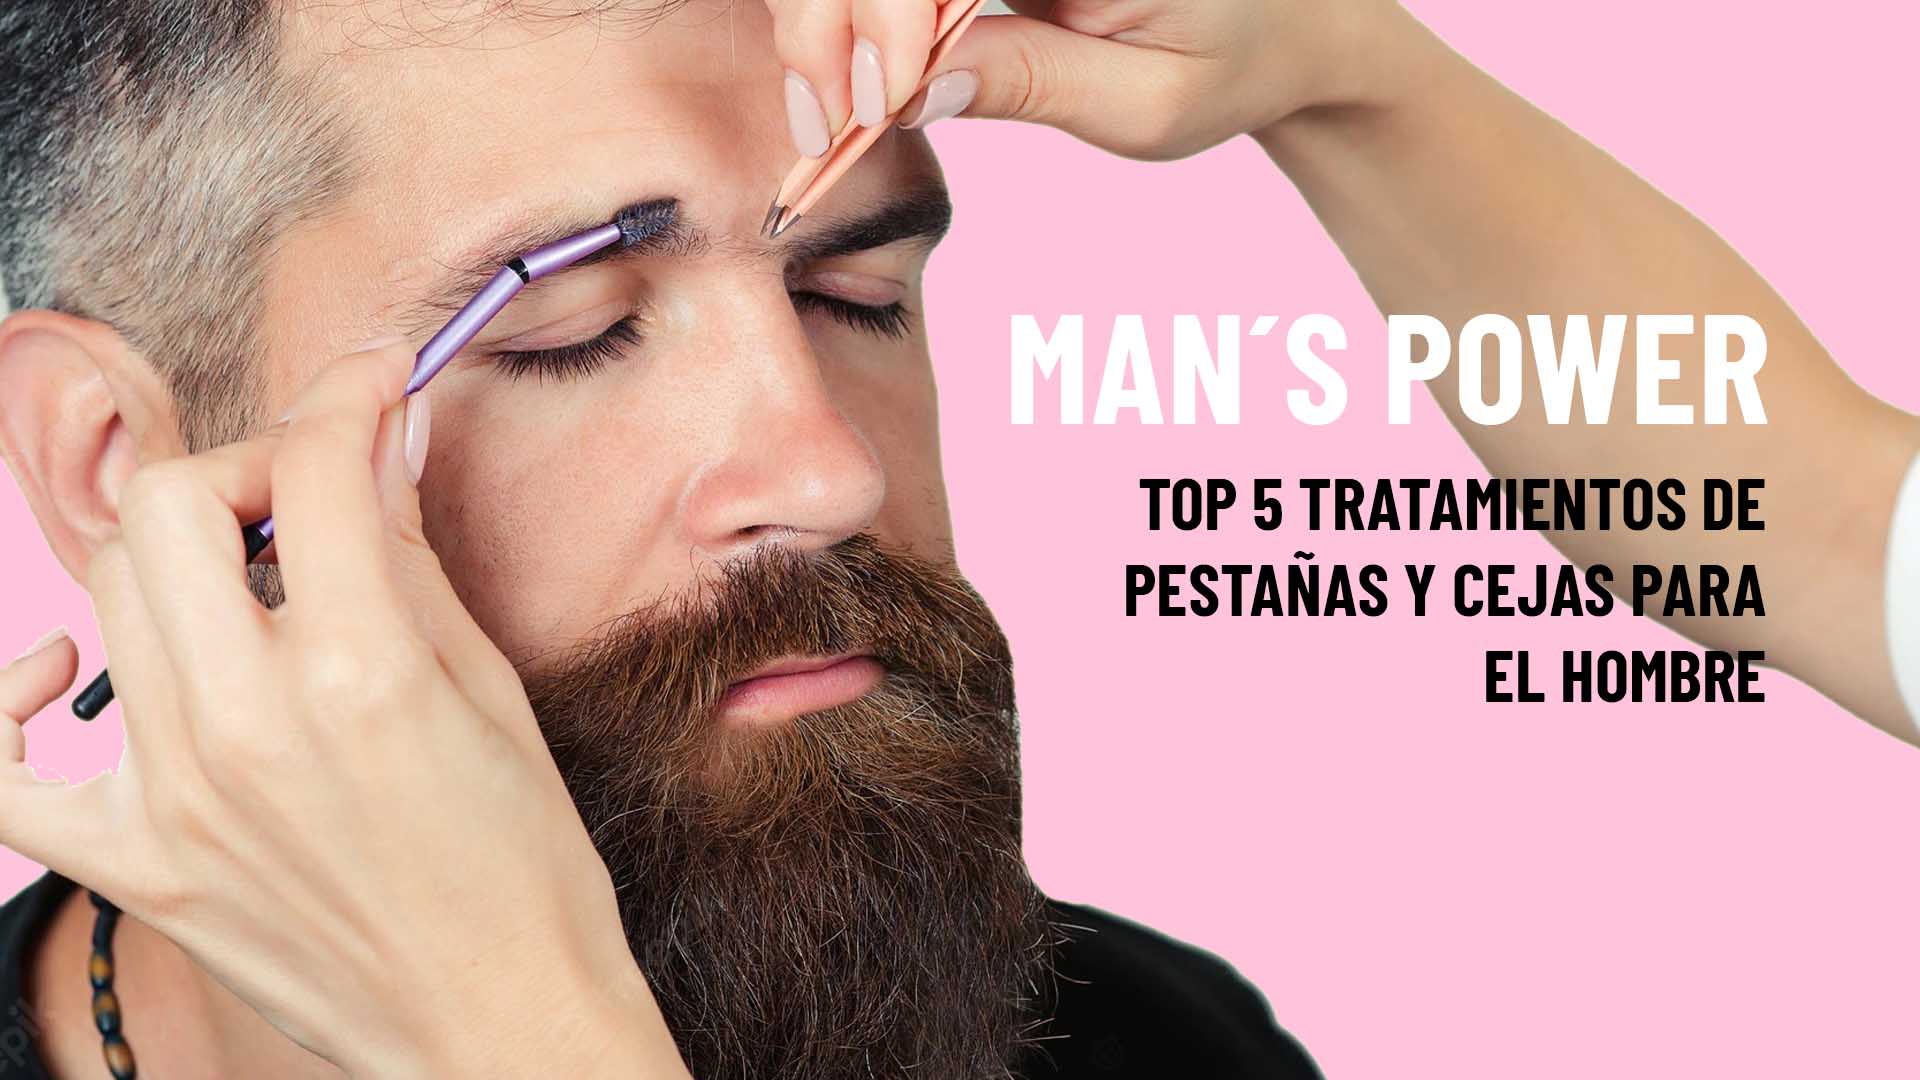 Top 5 tratamientos de pestañas y cejas en hombres